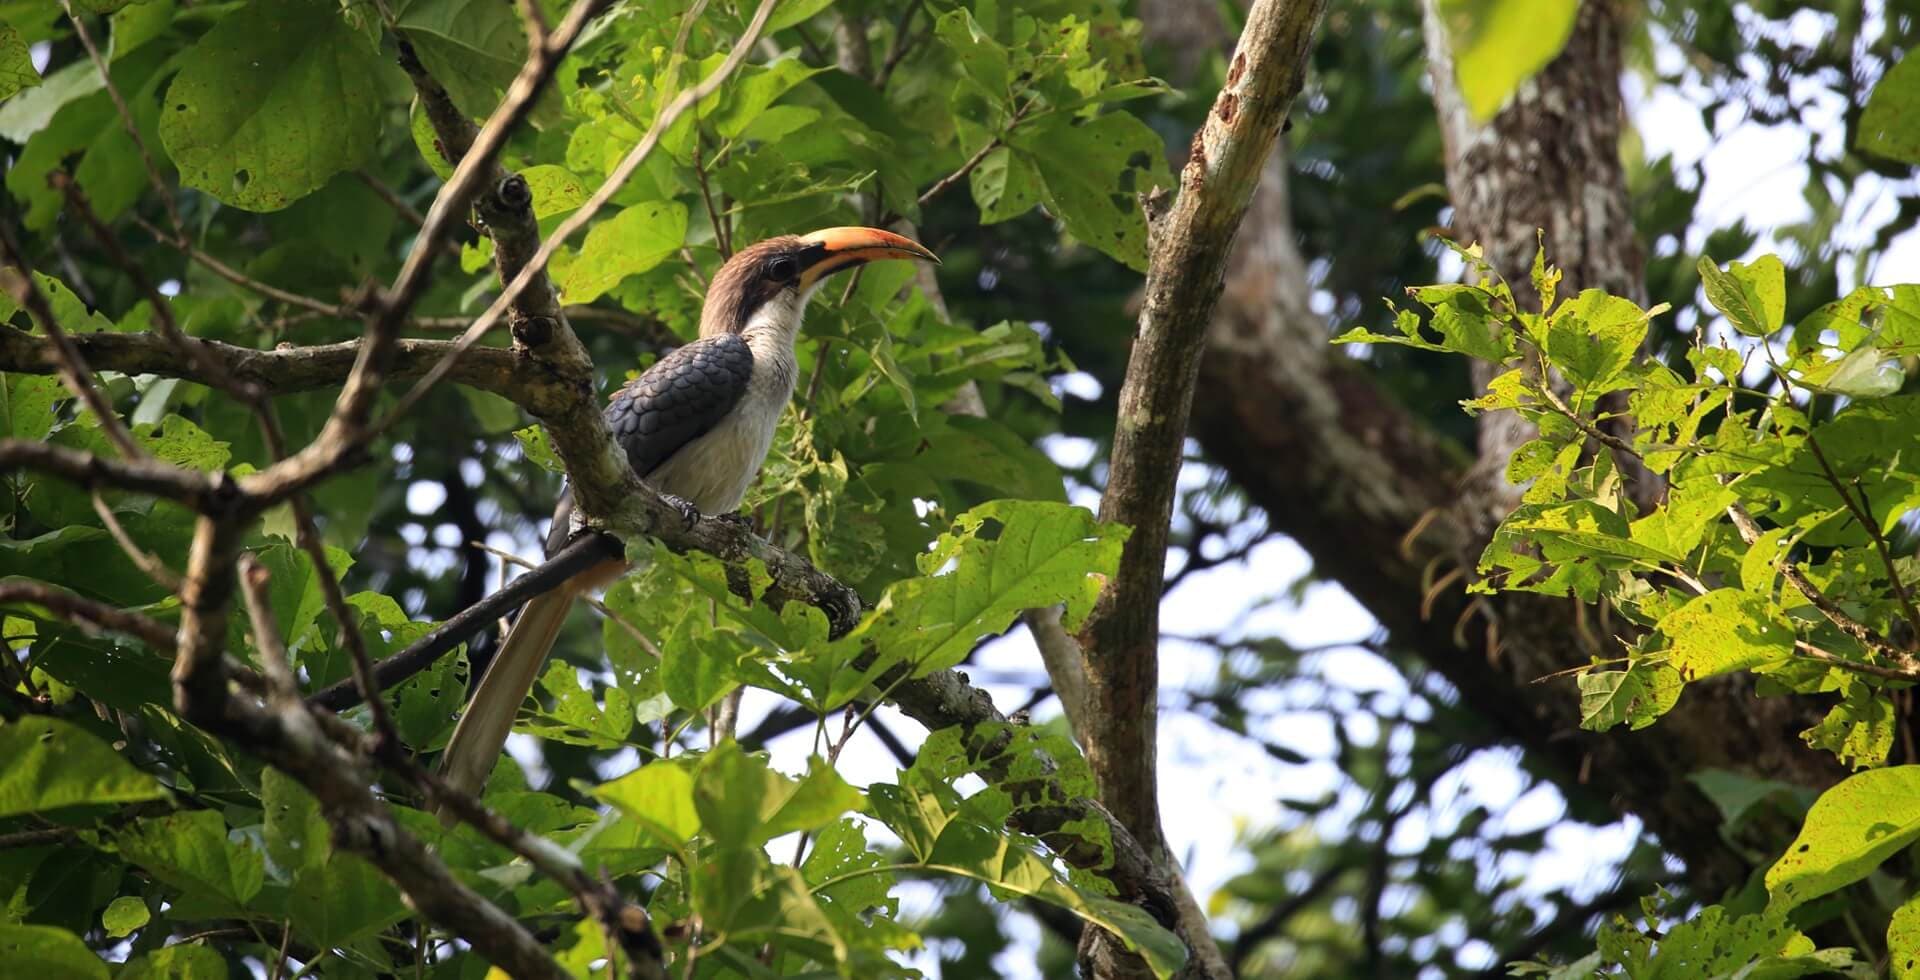 طائر أبو قرن الرمادي السيريلانكي (Ocyceros gingalensis) هو طائر من عائلة طيور أبو قرن ومربي مقيم واسع الانتشار وشائع في سريلانكا